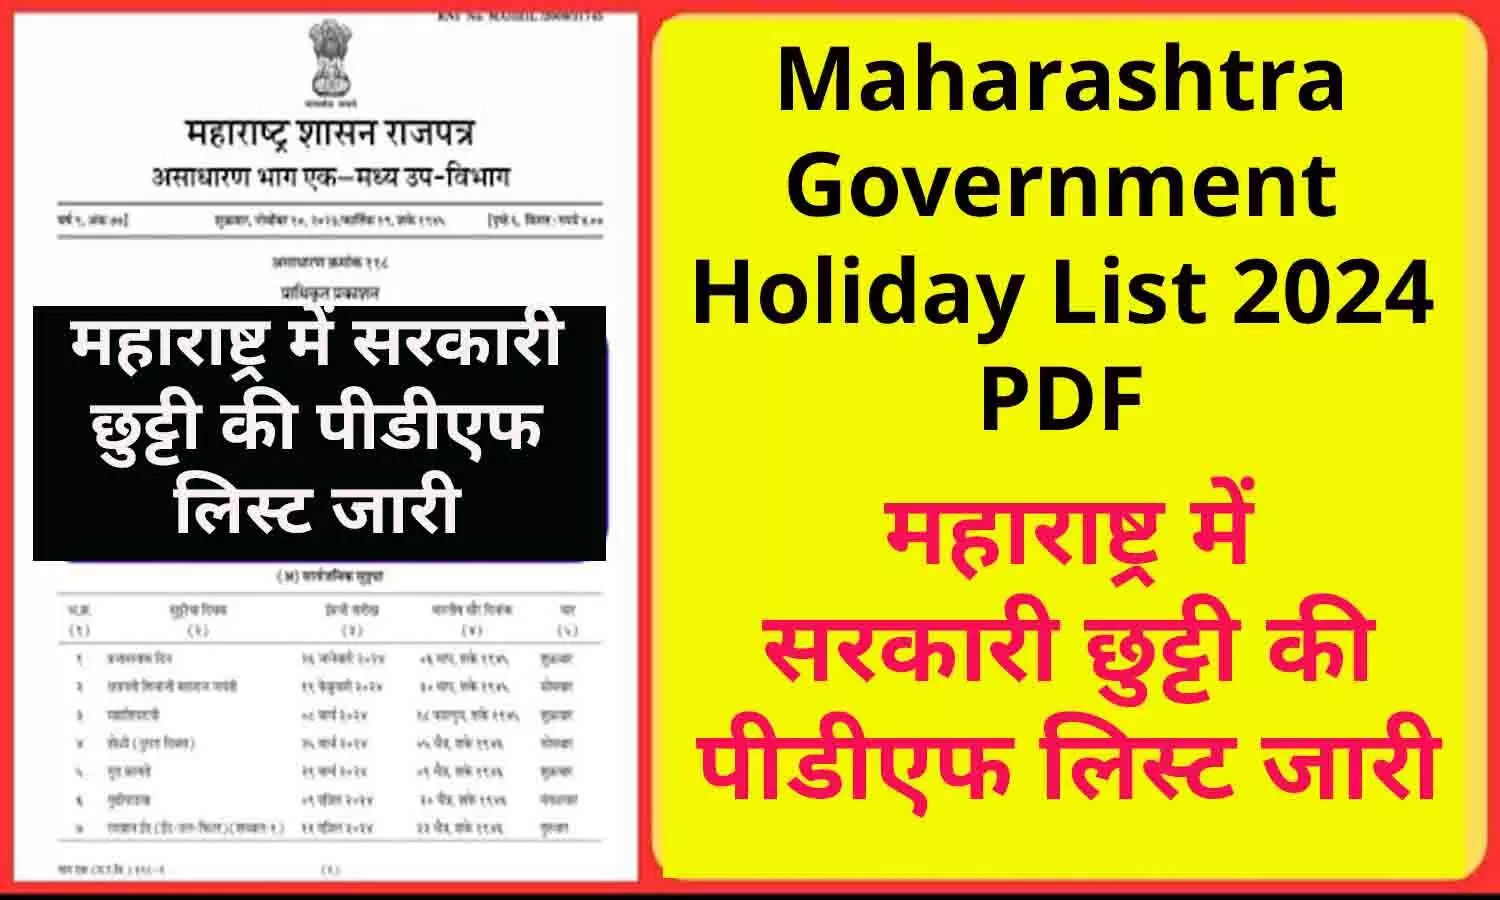 Maharashtra Government Holiday List 2024 PDF: महाराष्ट्र में सरकारी छुट्टी की पीडीएफ लिस्ट जारी